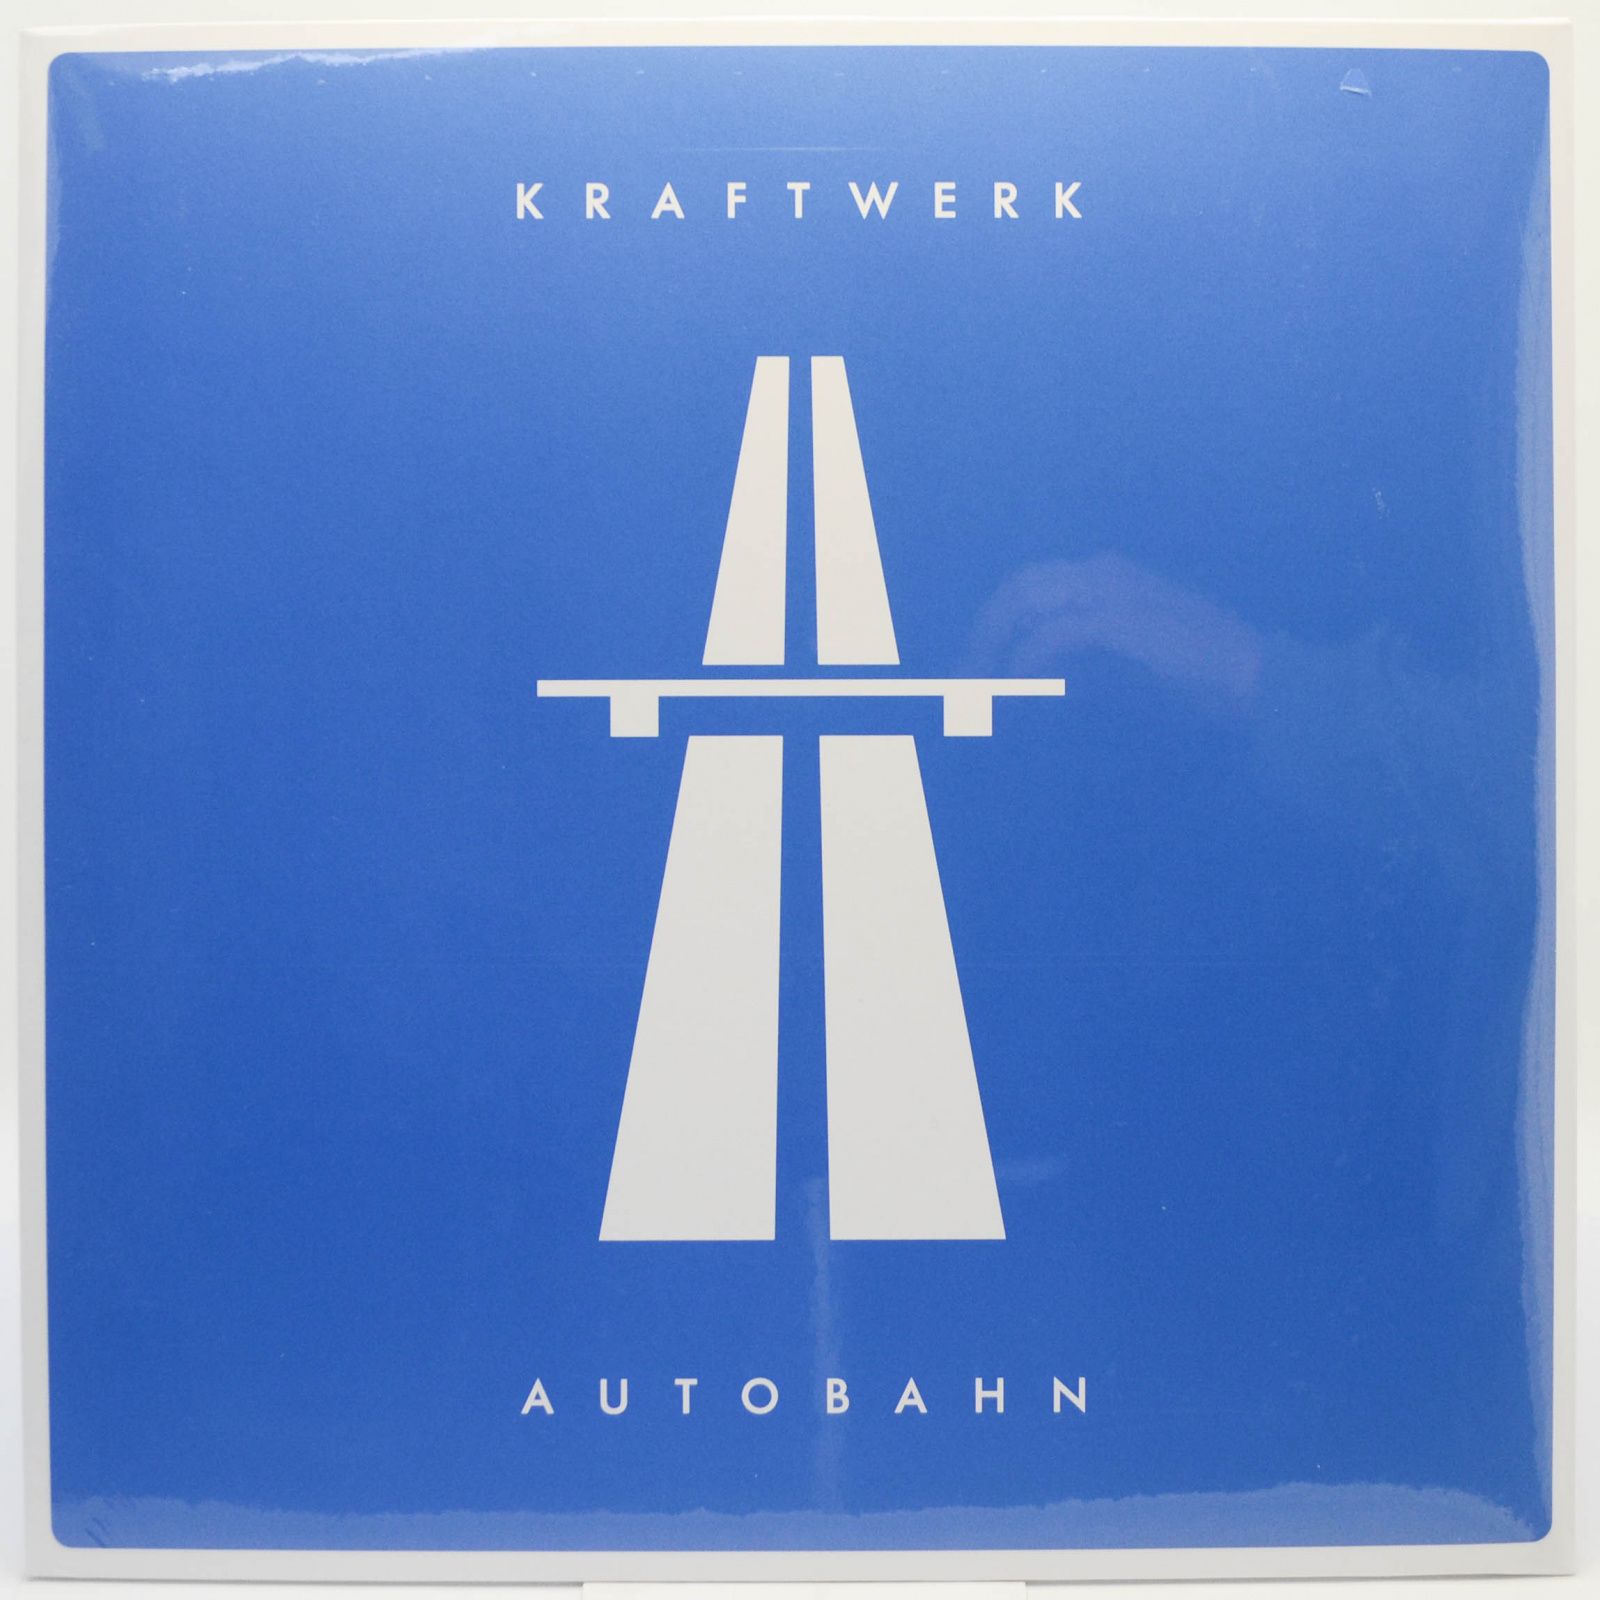 Autobahn, 1974